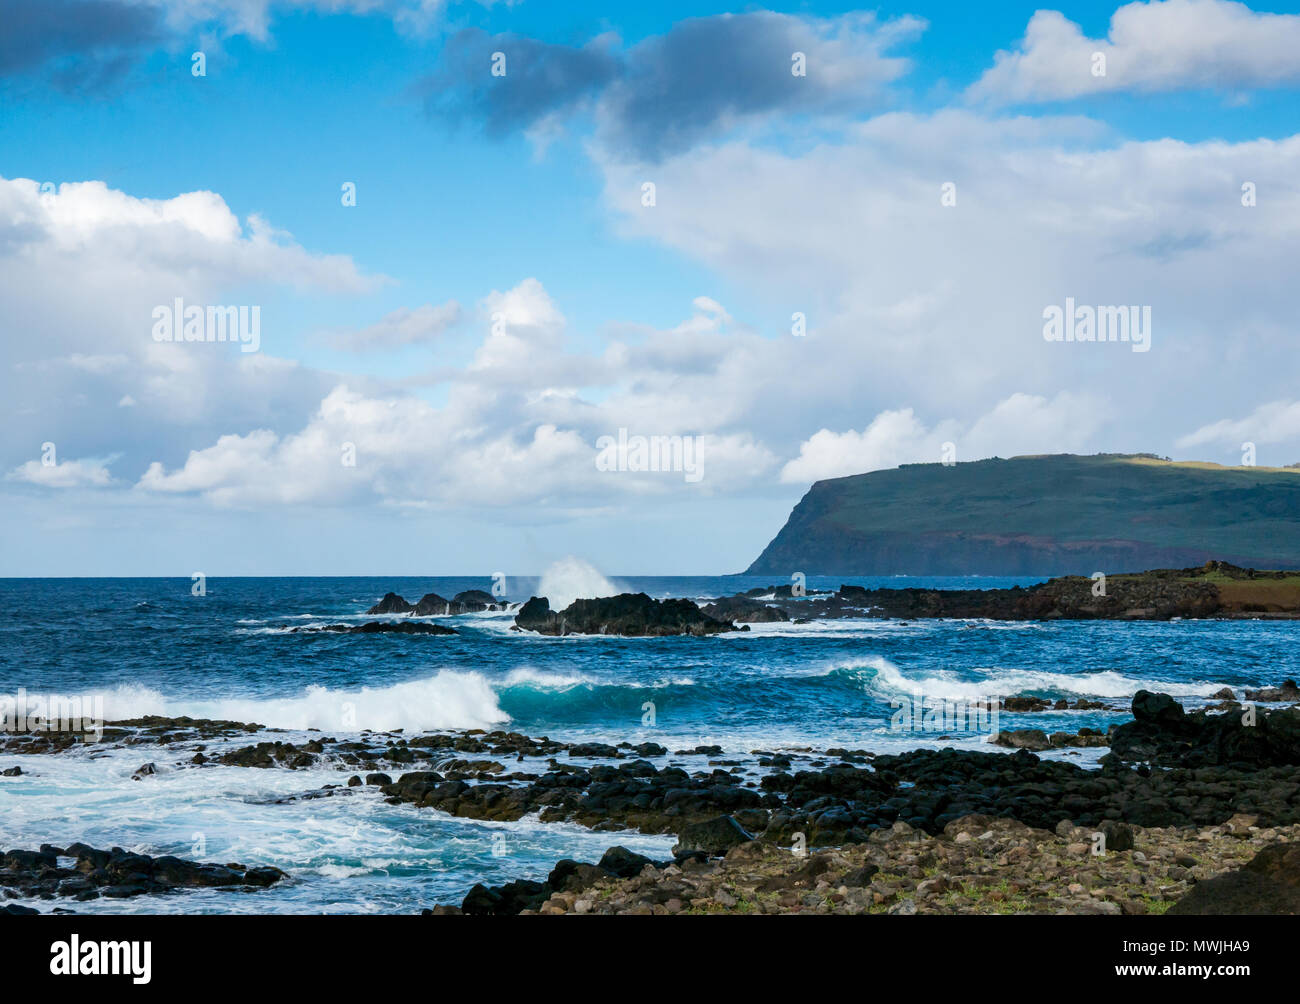 Oceano onde che si infrangono sulla spiaggia rocciosa, costa sud dell'isola di pasqua, Rapa Nui, Cile, con vista del vulcano estinto Rano Kau Foto Stock